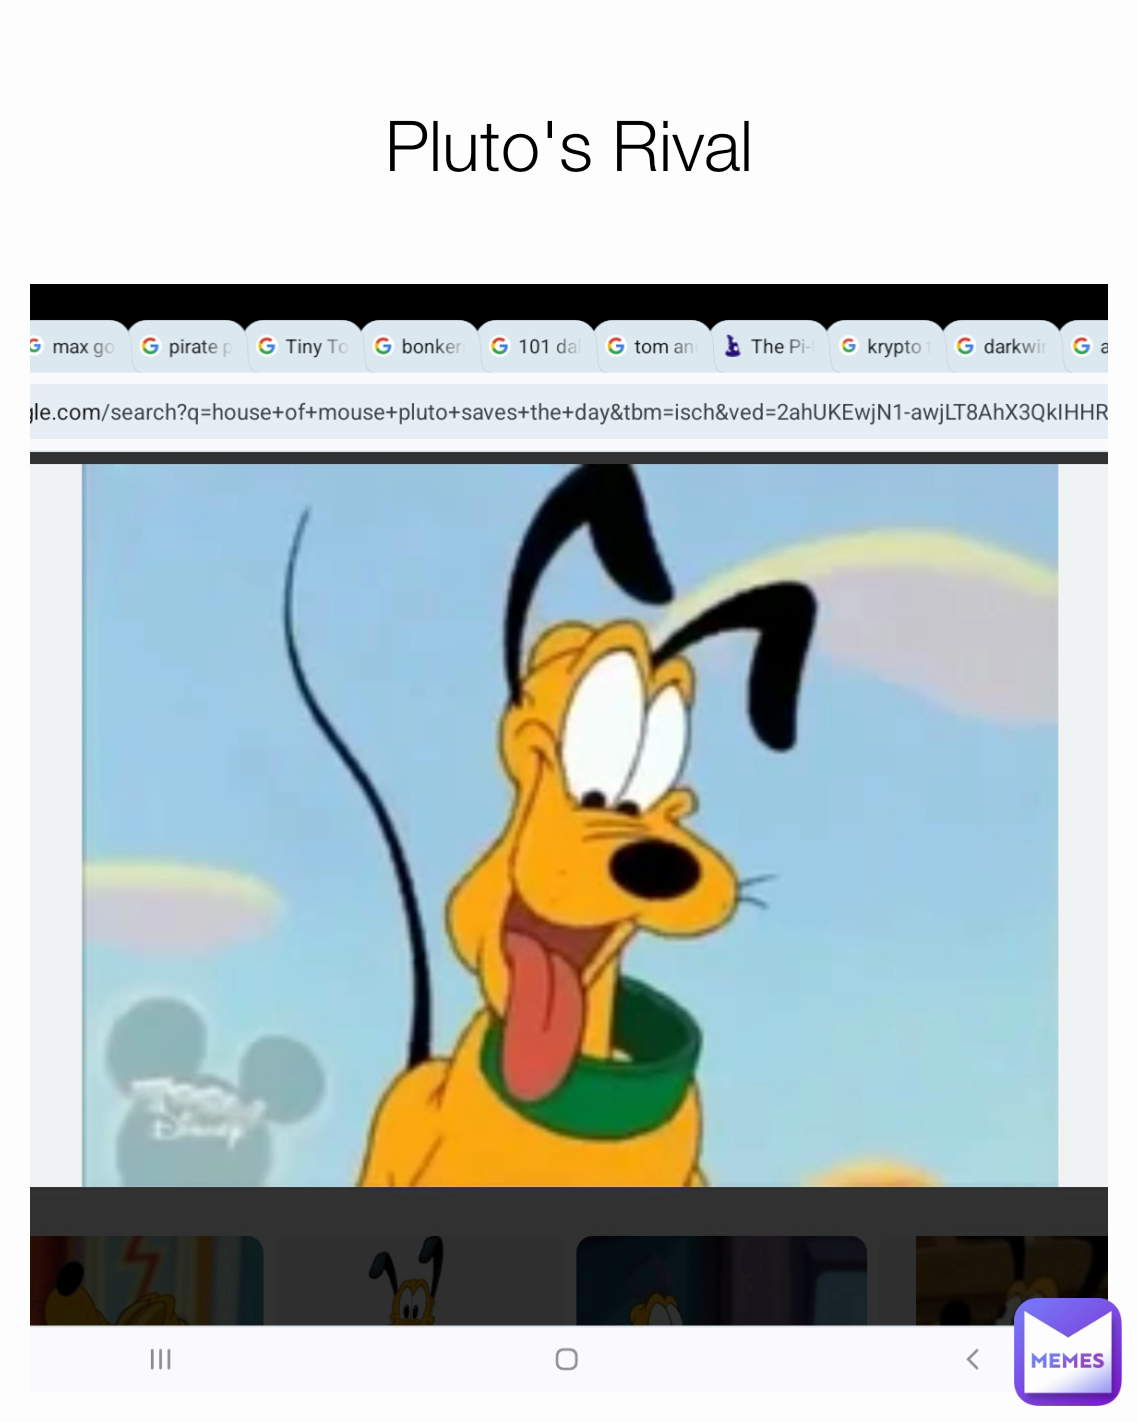 Pluto's Rival